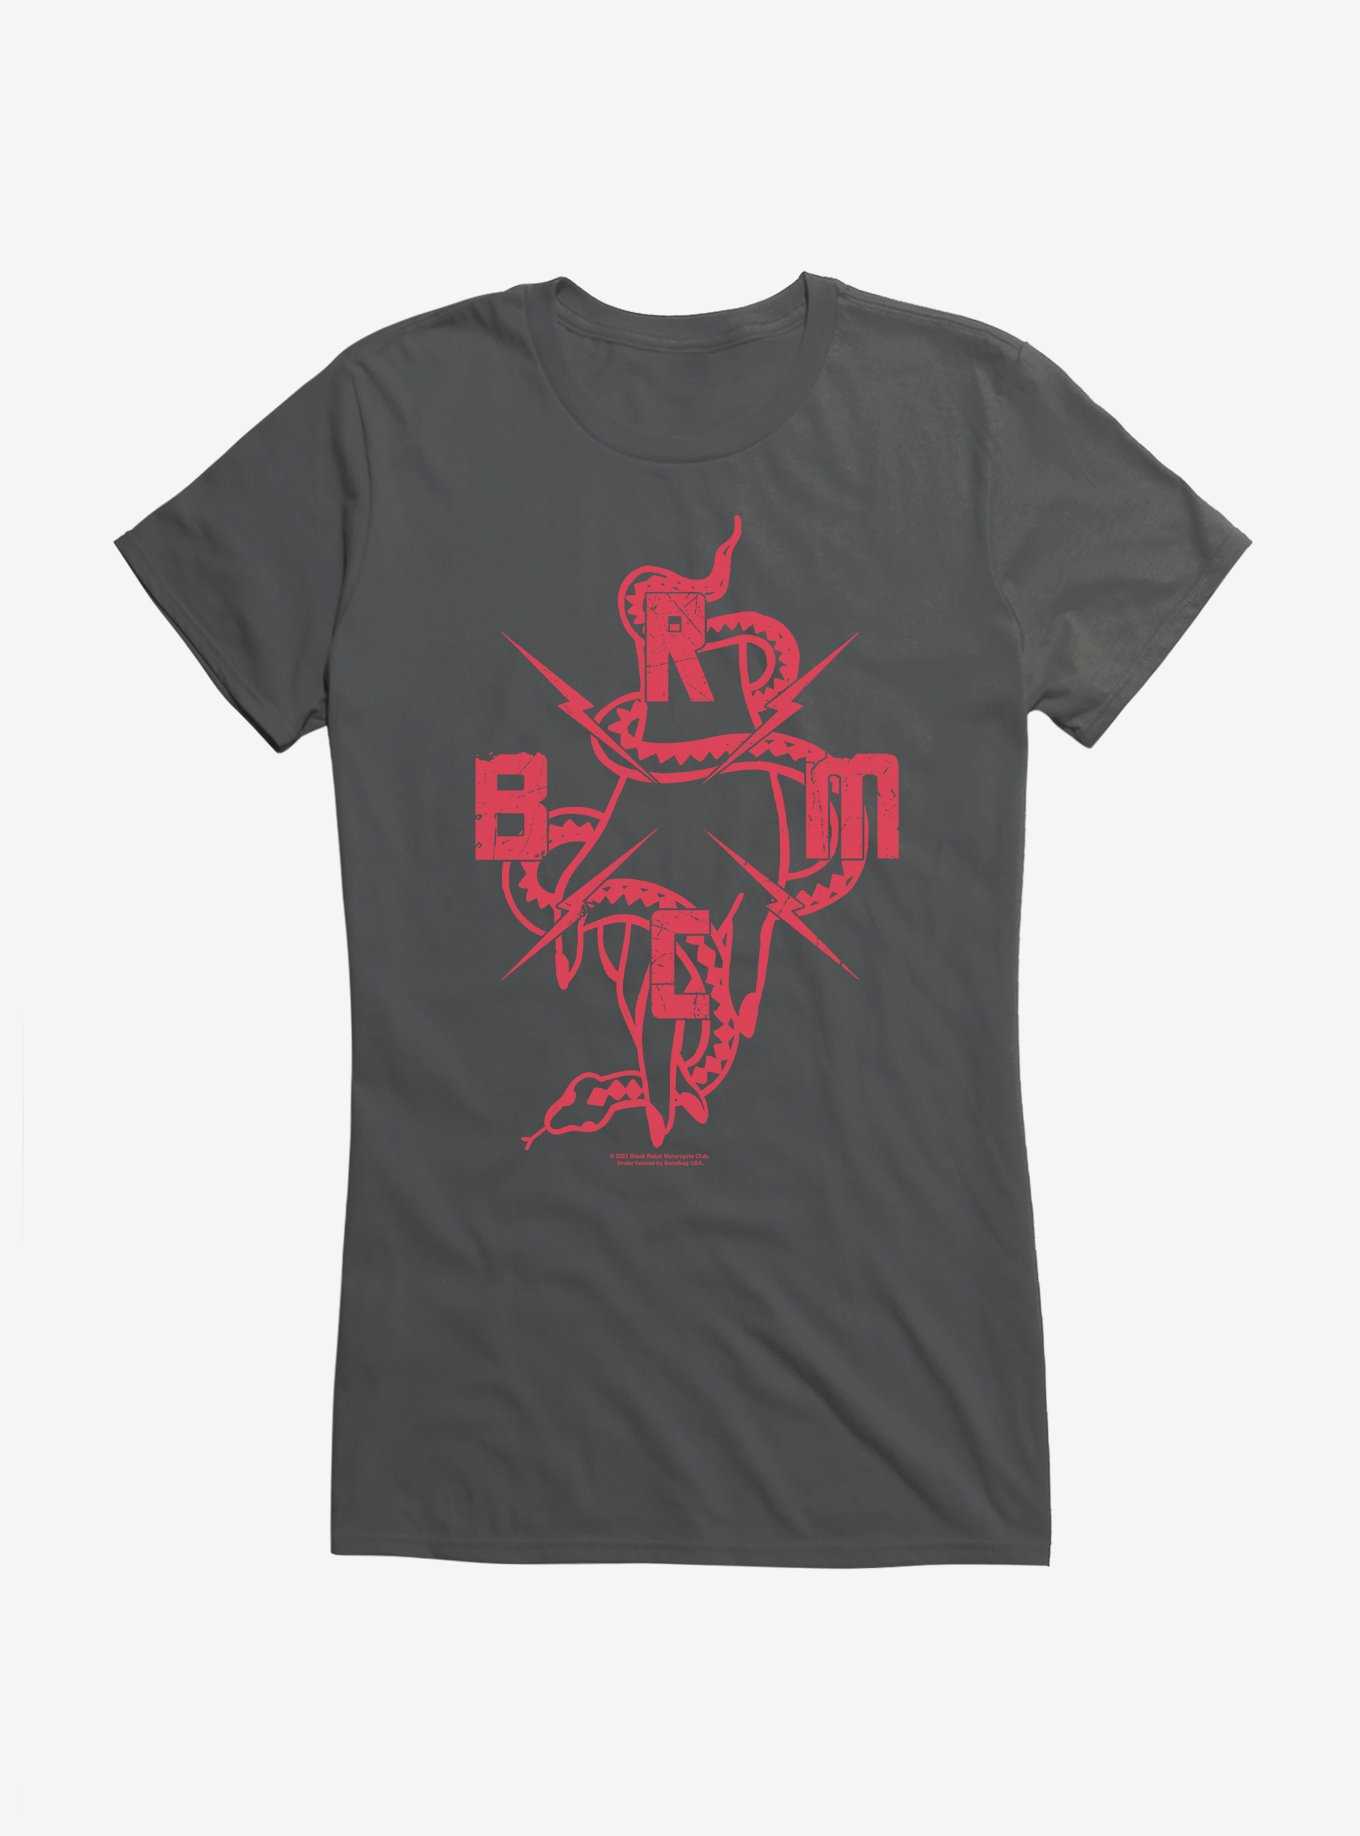 Black Rebel Motorcycle Club Snake Hand Girls T-Shirt, , hi-res